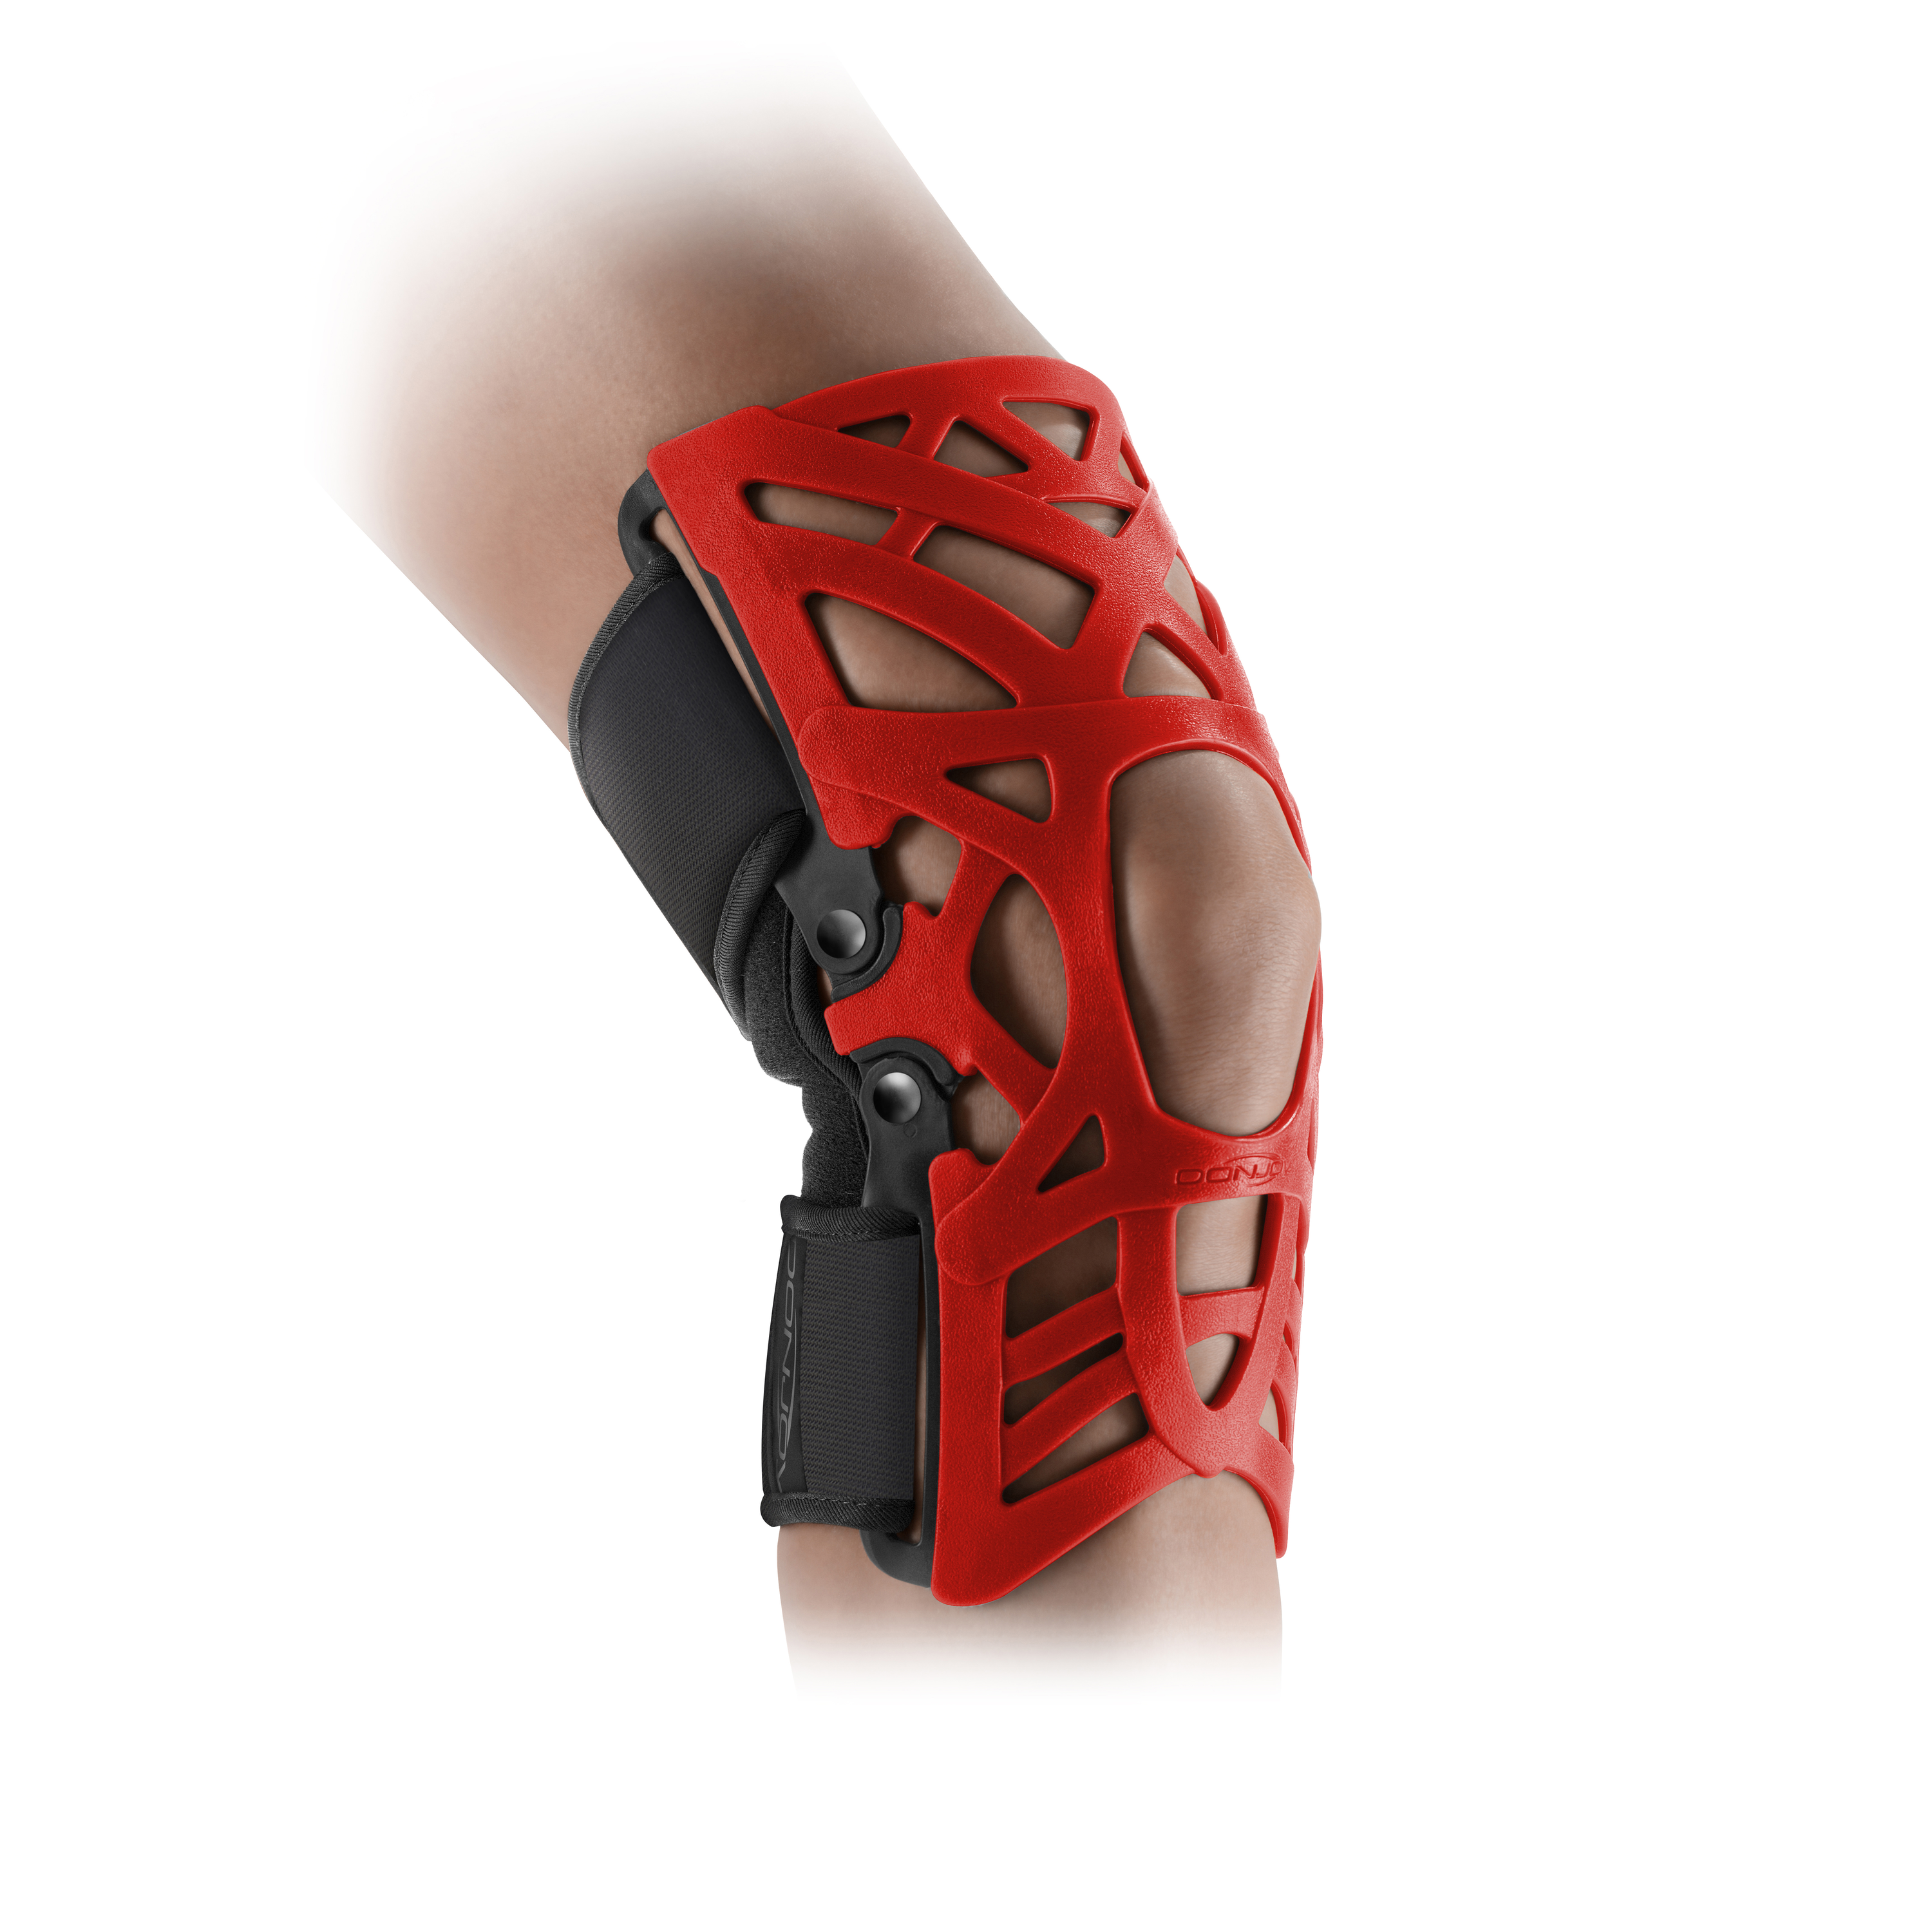 Produktbild DONJOY® Matrix PT rot, Orthese zur Entlastung und Sicherung des Patellagleitweges